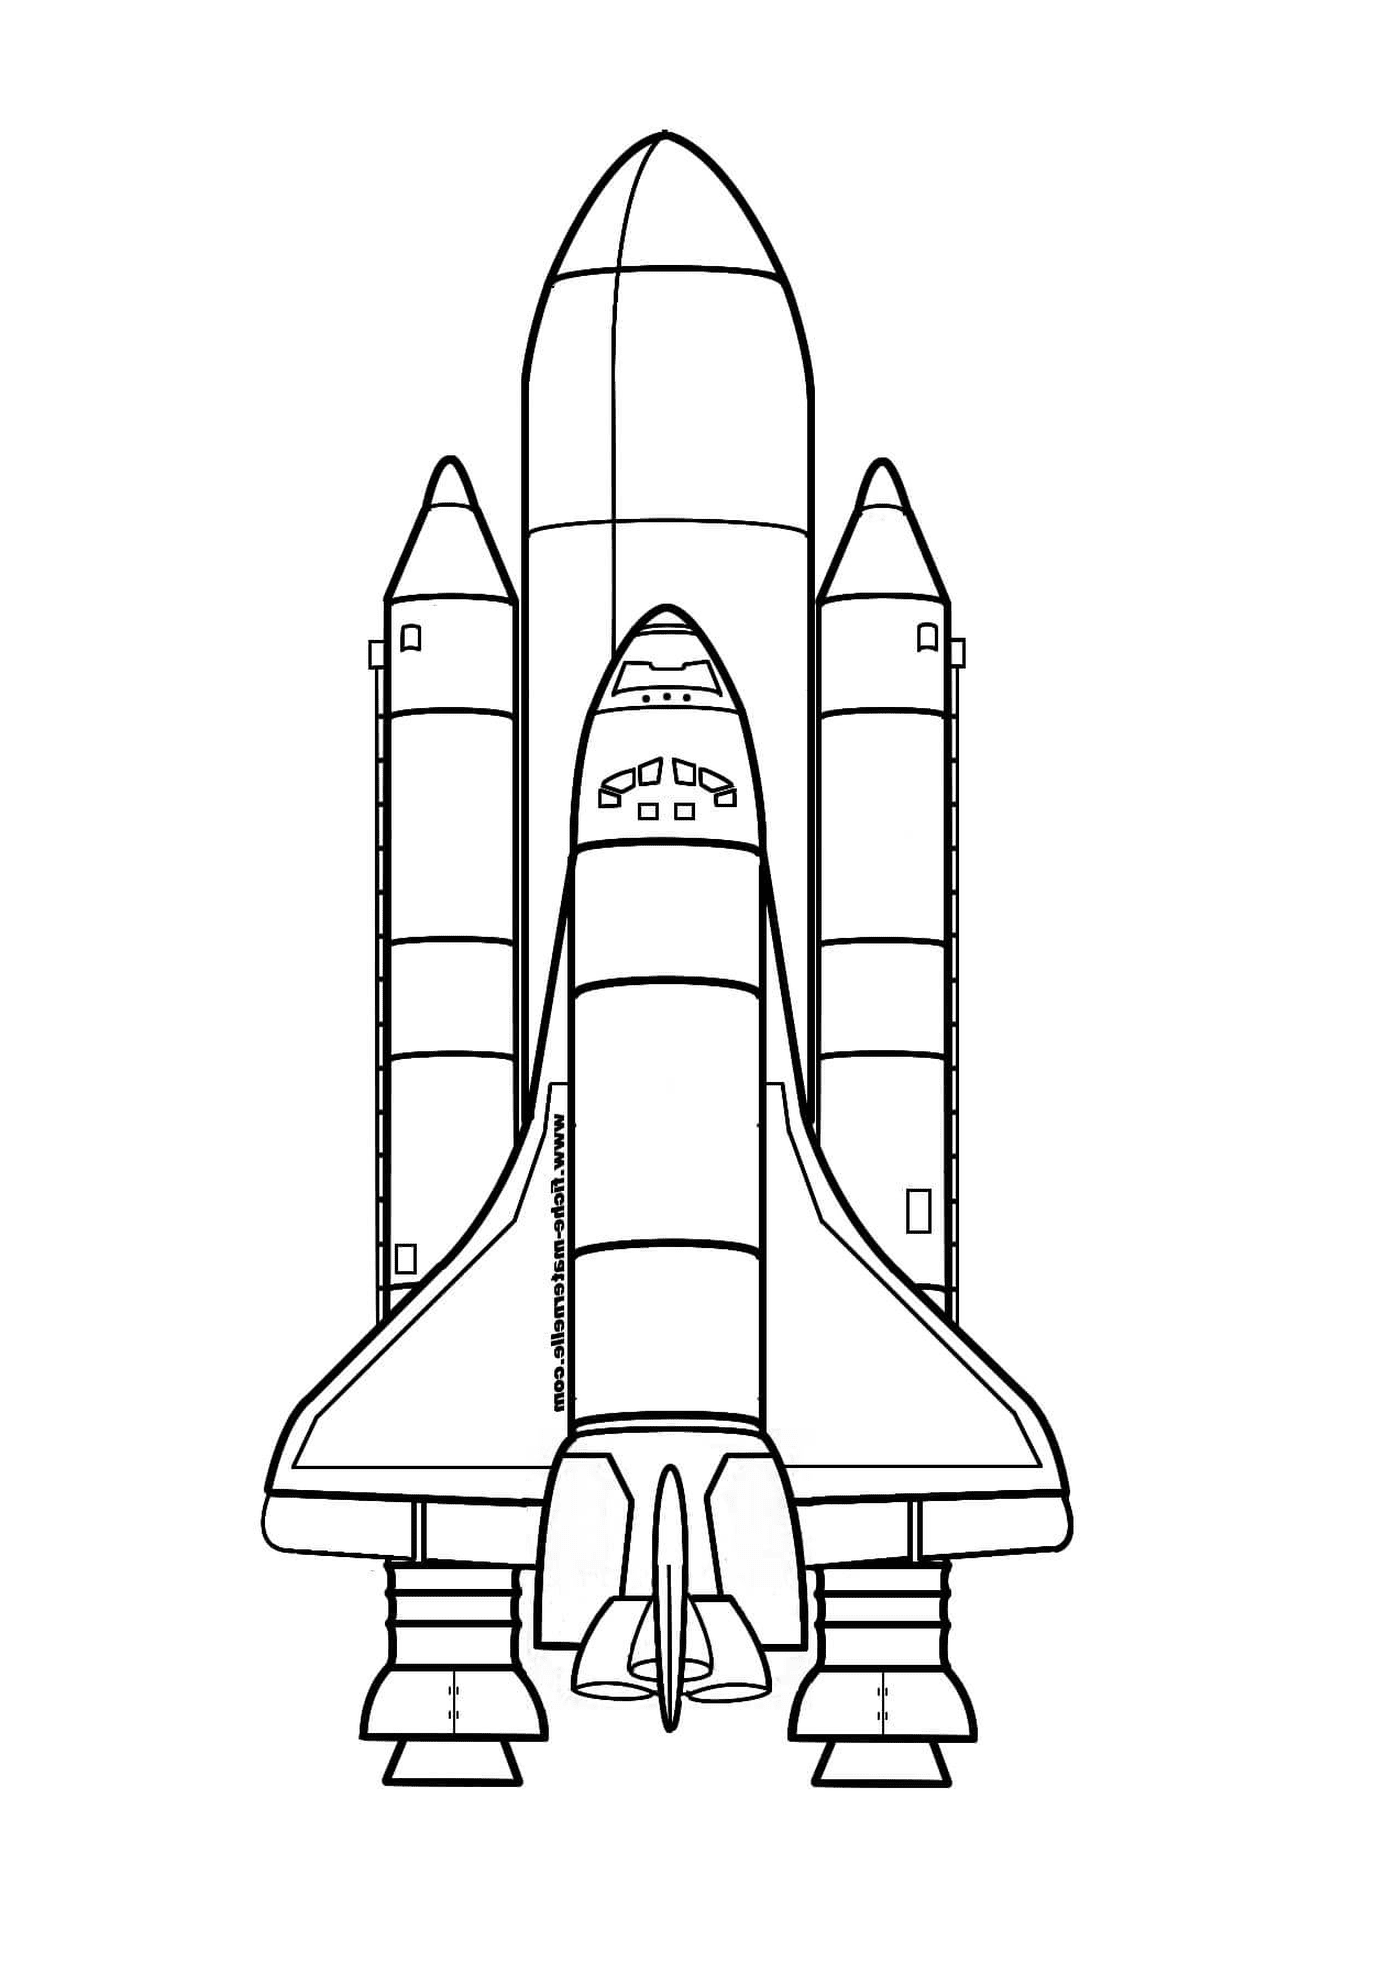  Shuttle spaziale a terra 